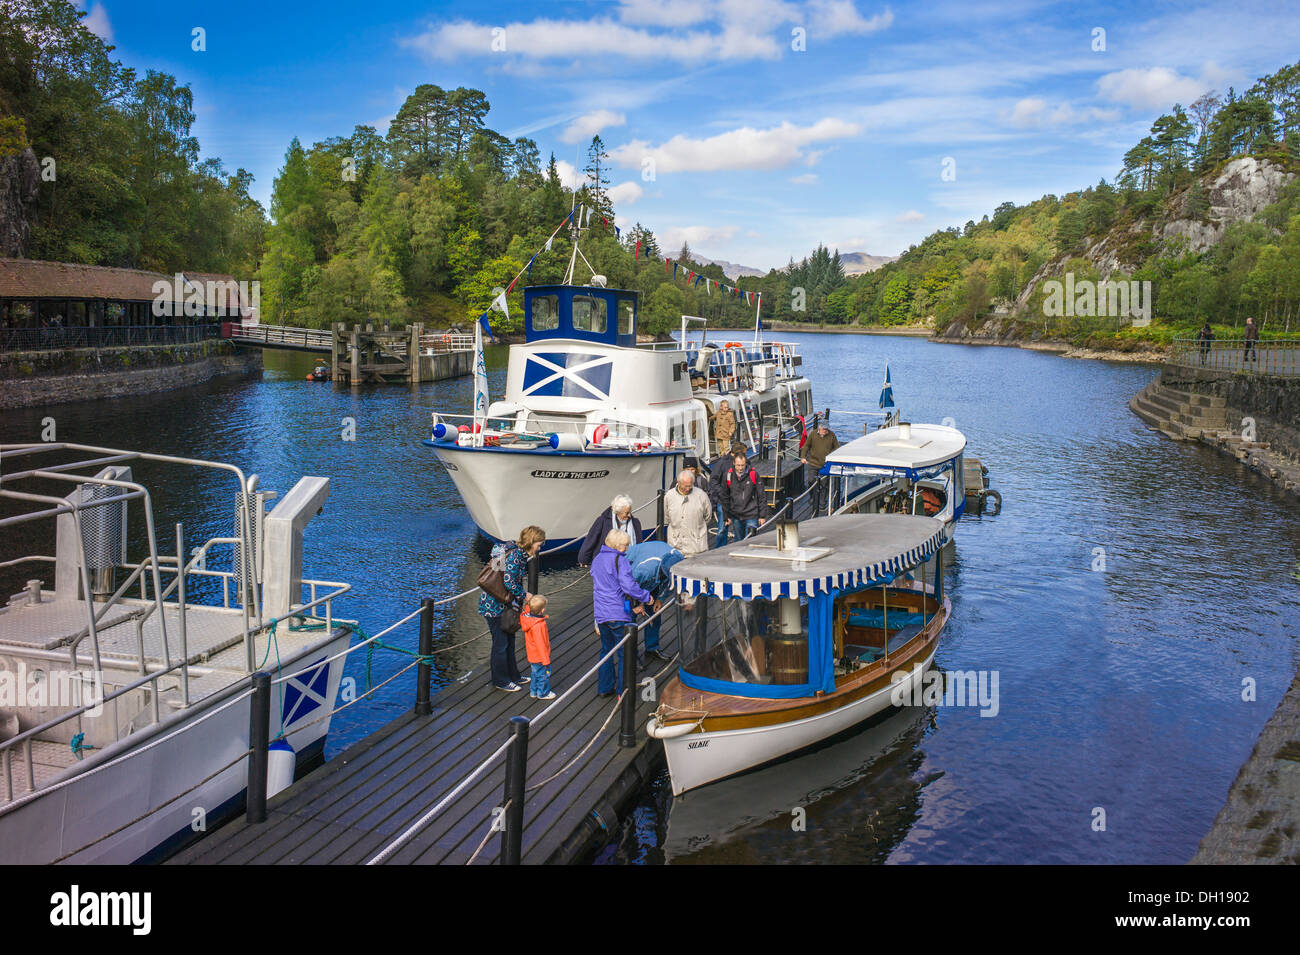 Los pasajeros desembarcan de la embarcación de recreo La dama del lago Loch Katrine en los Trossachs pier pasando pequeños barcos de vapor Foto de stock